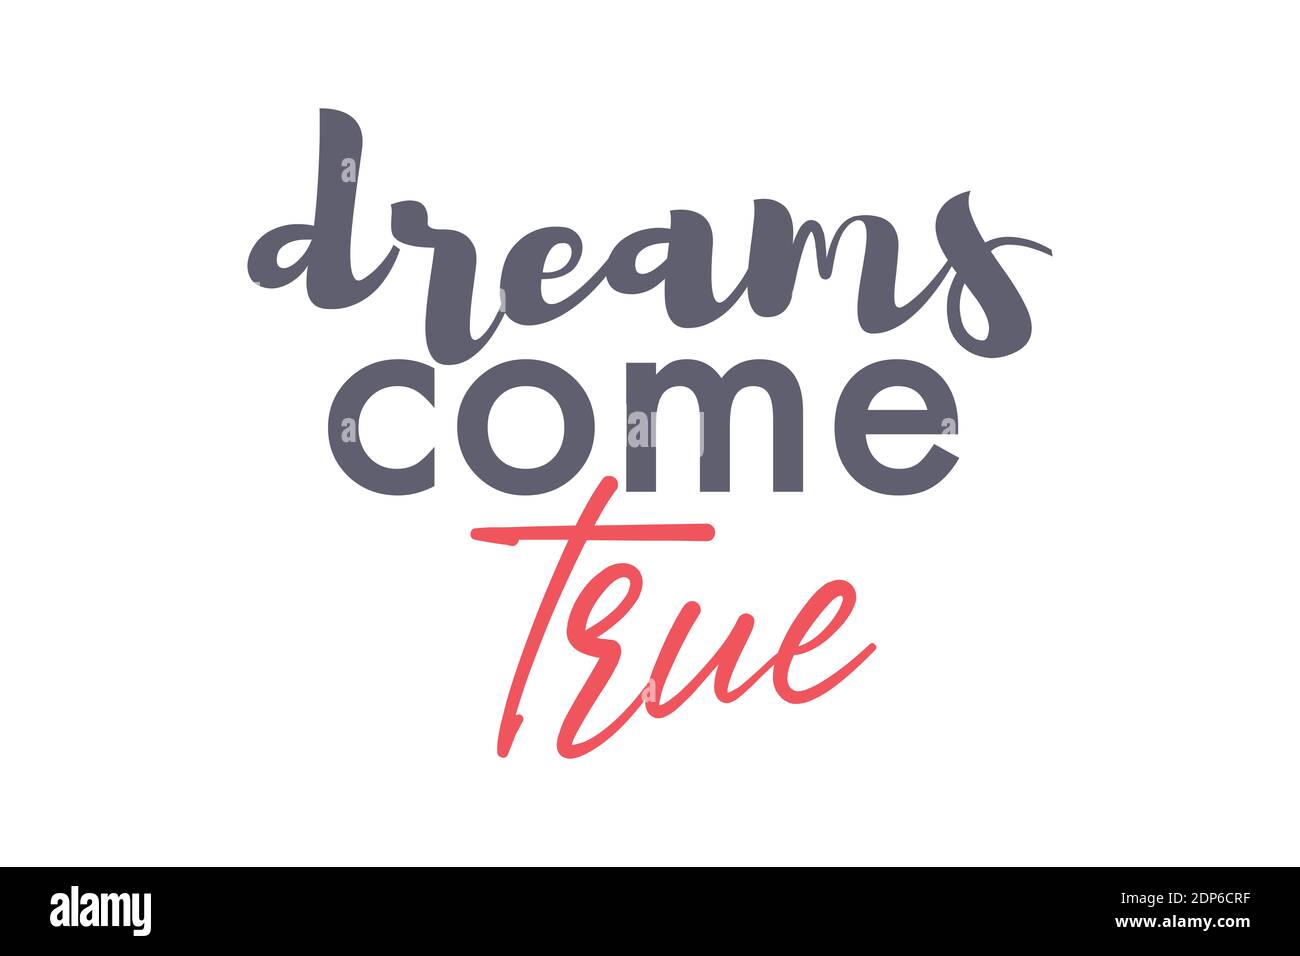 Verspieltes, modernes Grafikdesign eines Sprichwort "Dreams come true" in grau und rot. Kreative, experimentelle und urbane Typografie. Stockfoto